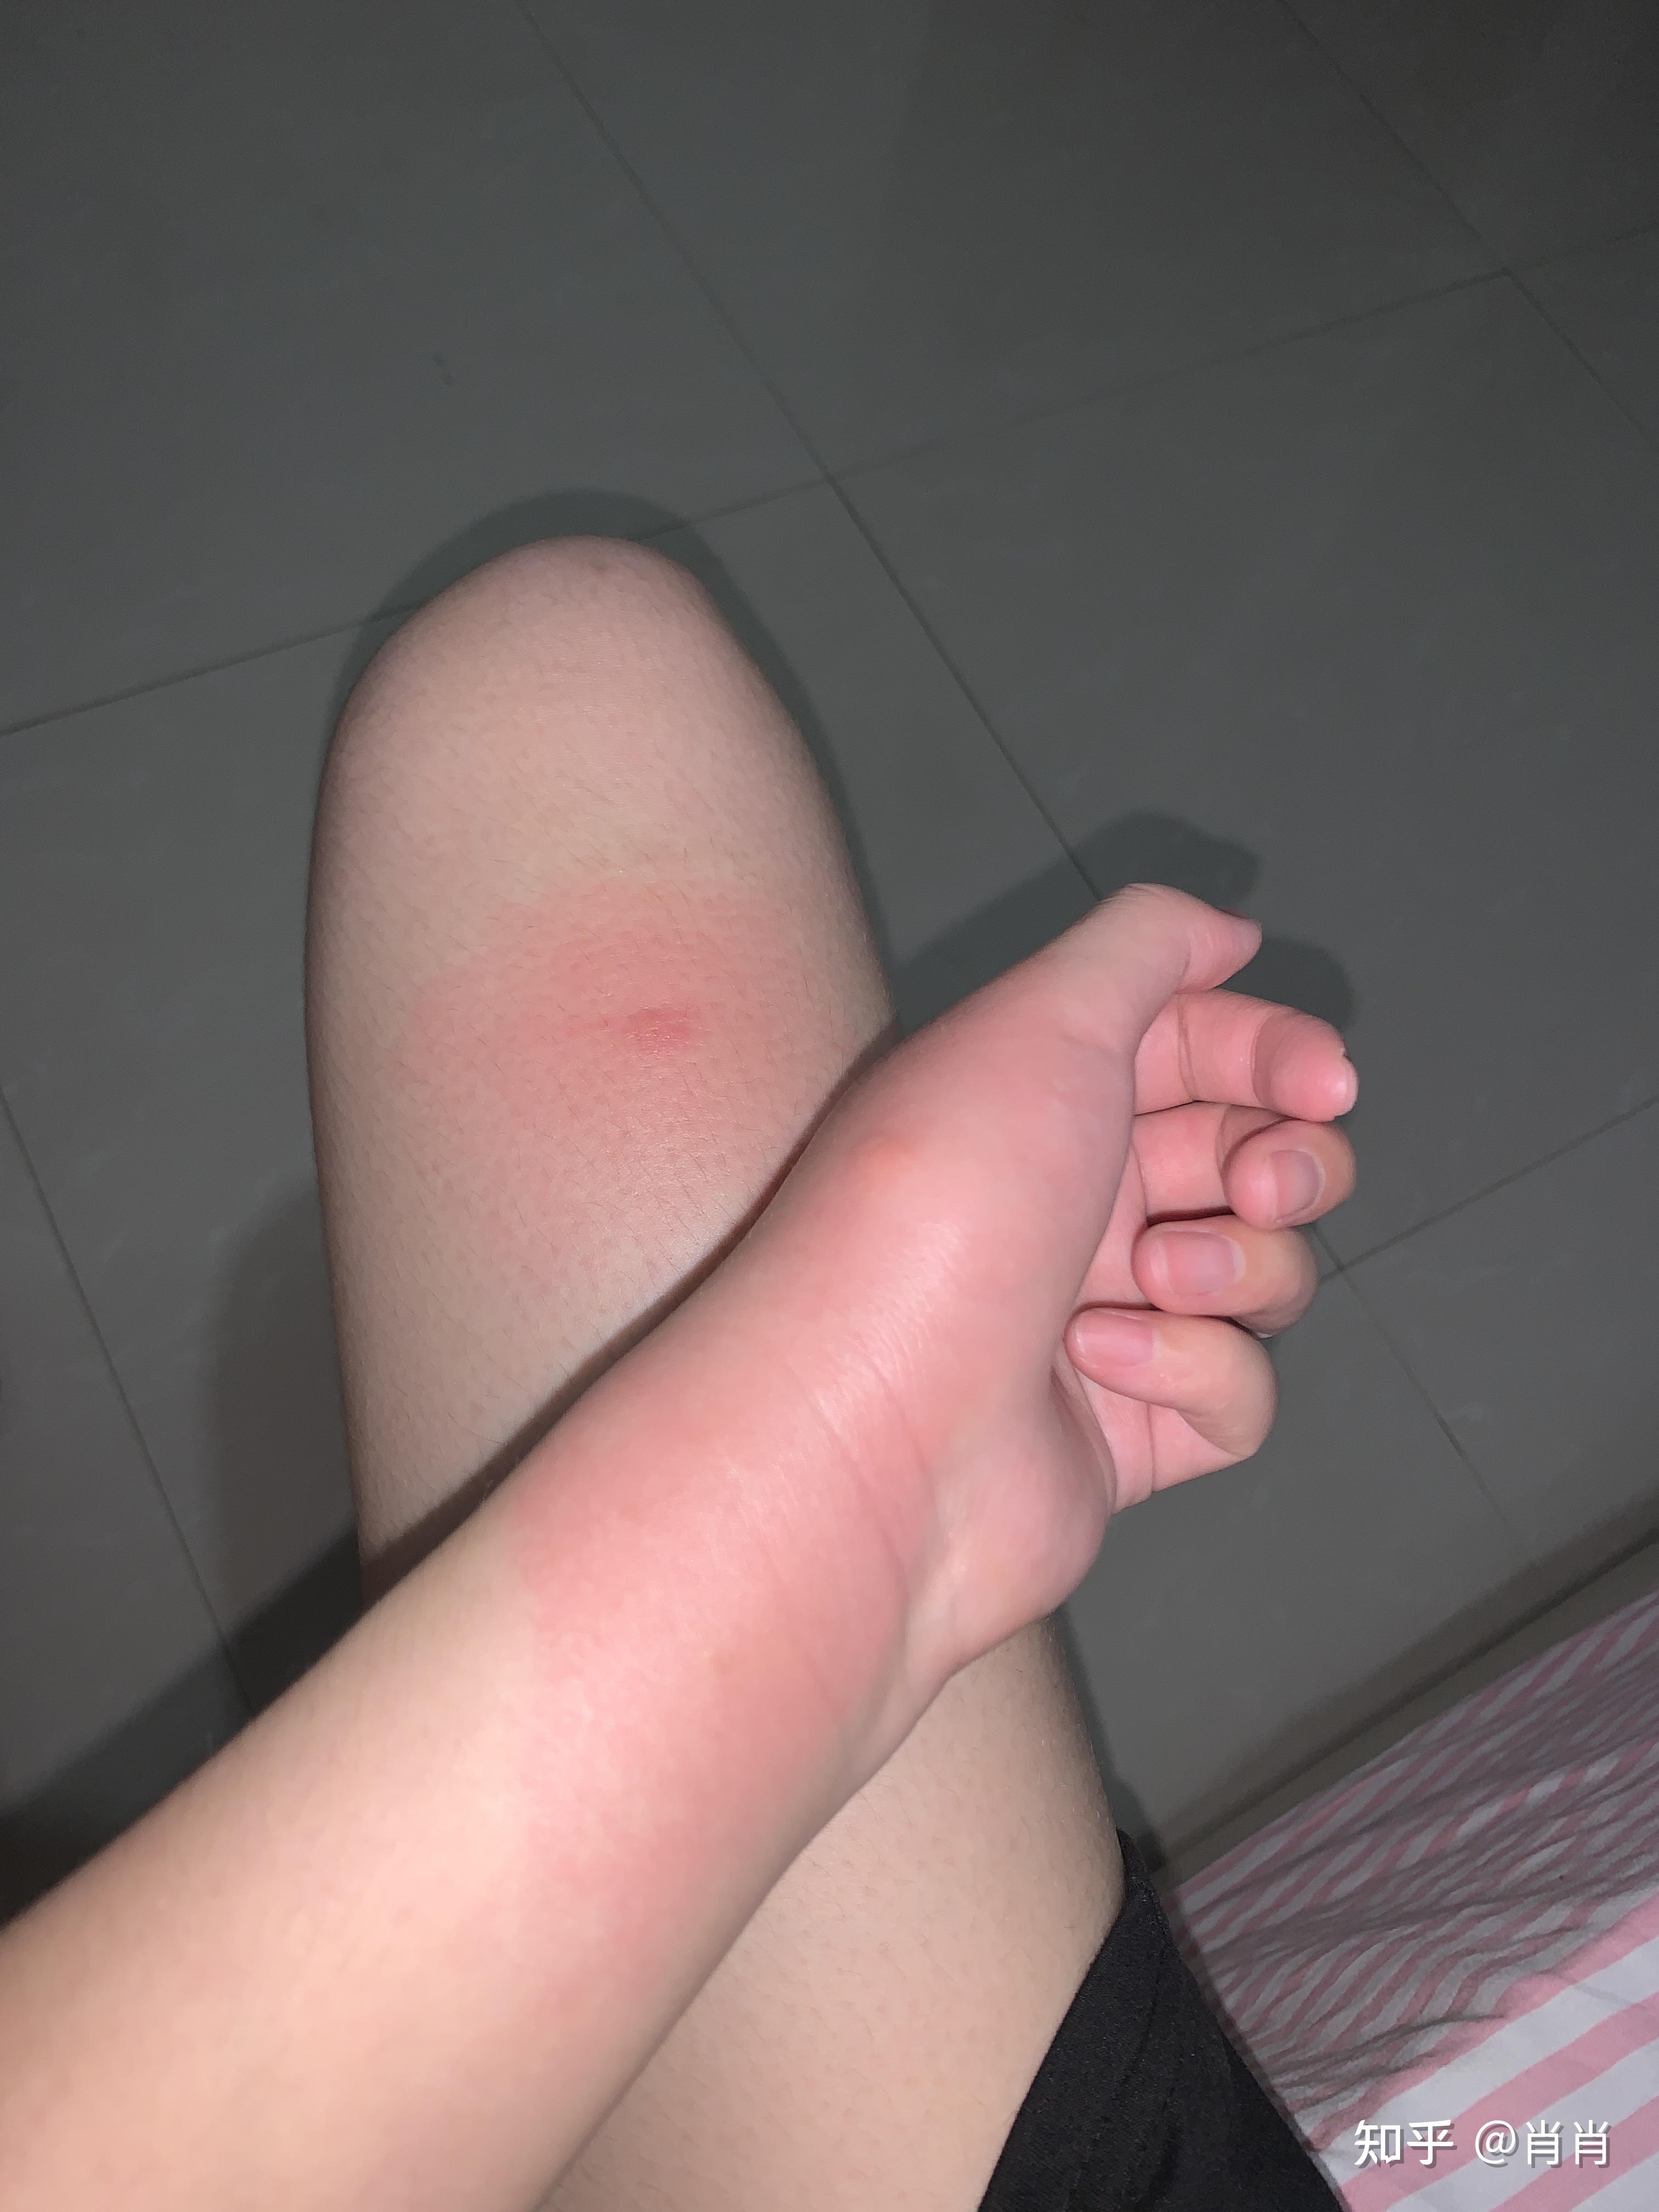 为什么蚊子咬完会肿起来一大片硬包还很热周围皮肤是凉的是我的免疫